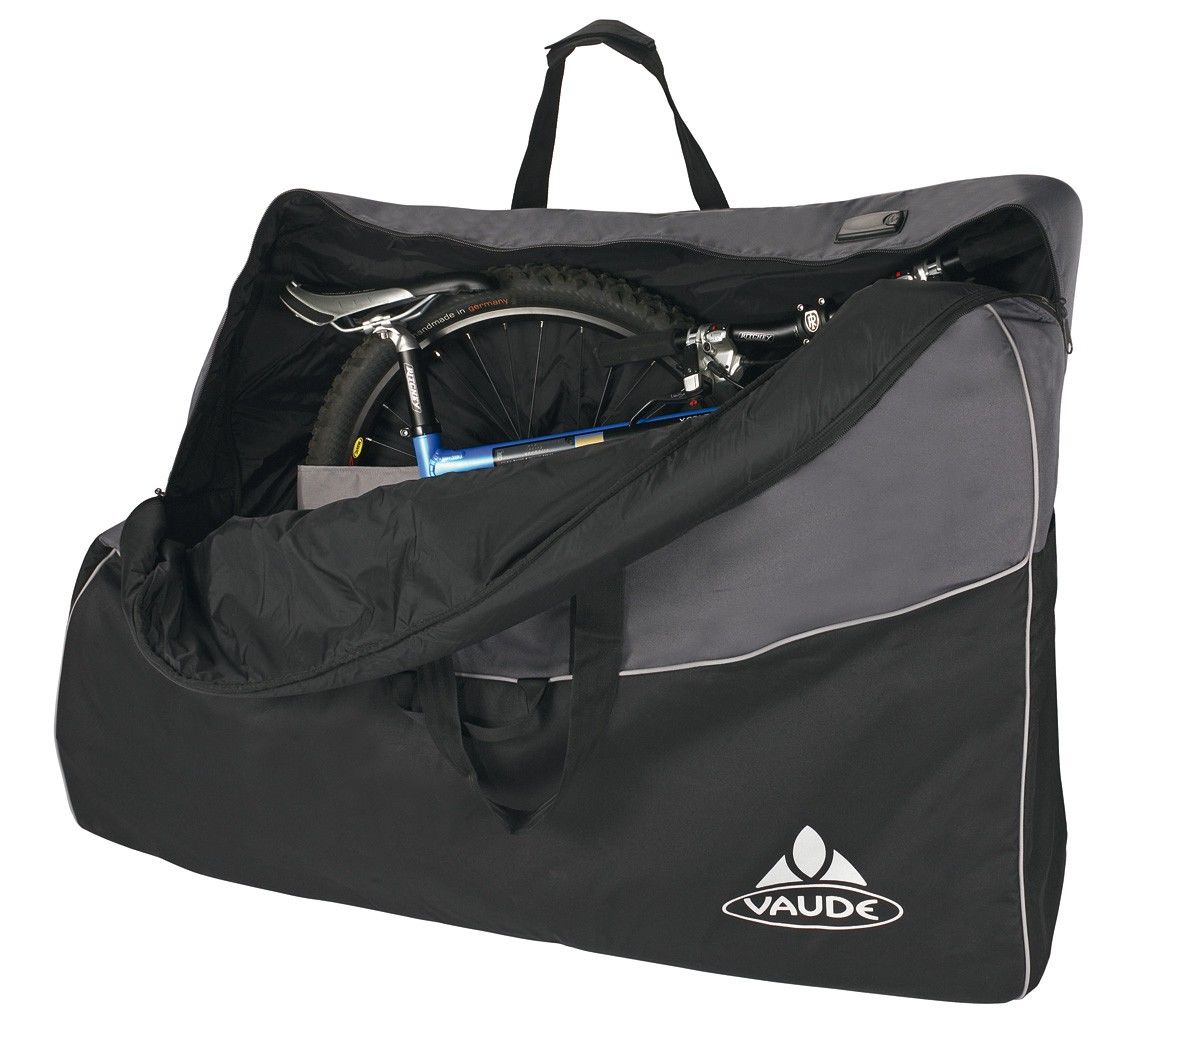 Vaude Big Bike Bag Grau - Schwarz- Fahrradtaschen- Grsse One Size - Farbe Black - Anthracite